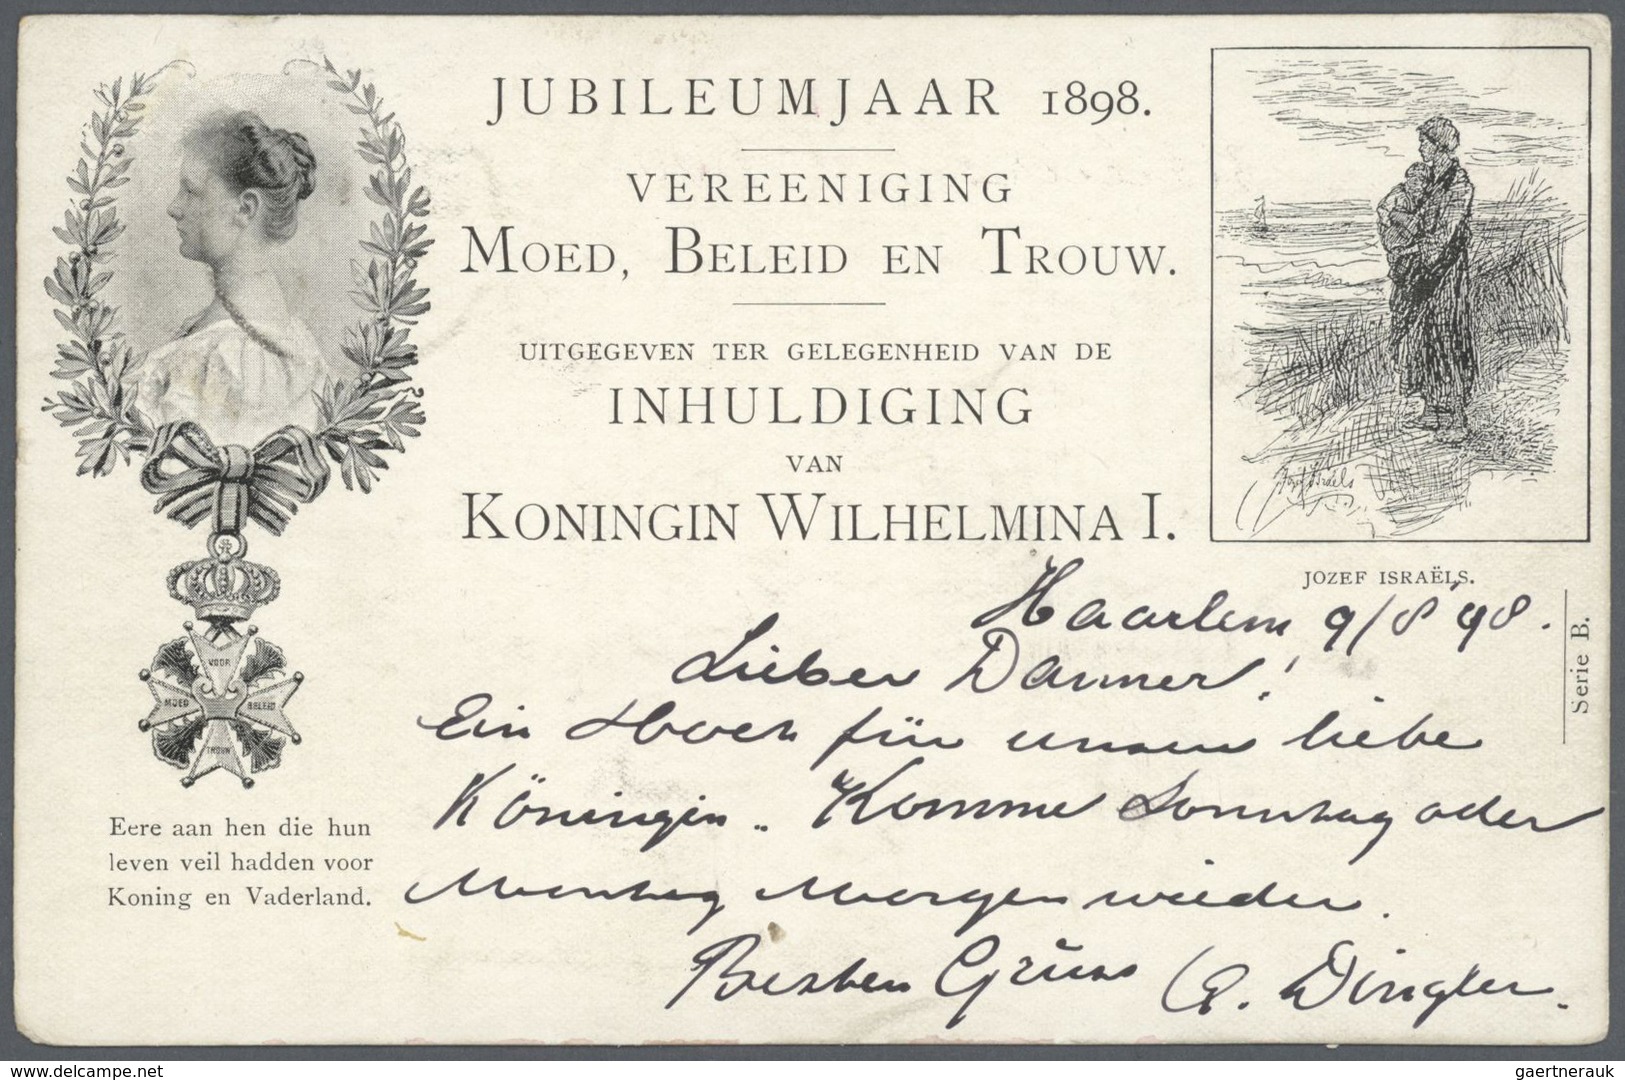 27452 Niederlande: 1892 - 1947, Sammlung von über 100 Ansichtskarten, bis auf wenige Ausnahmen bedarfsgere